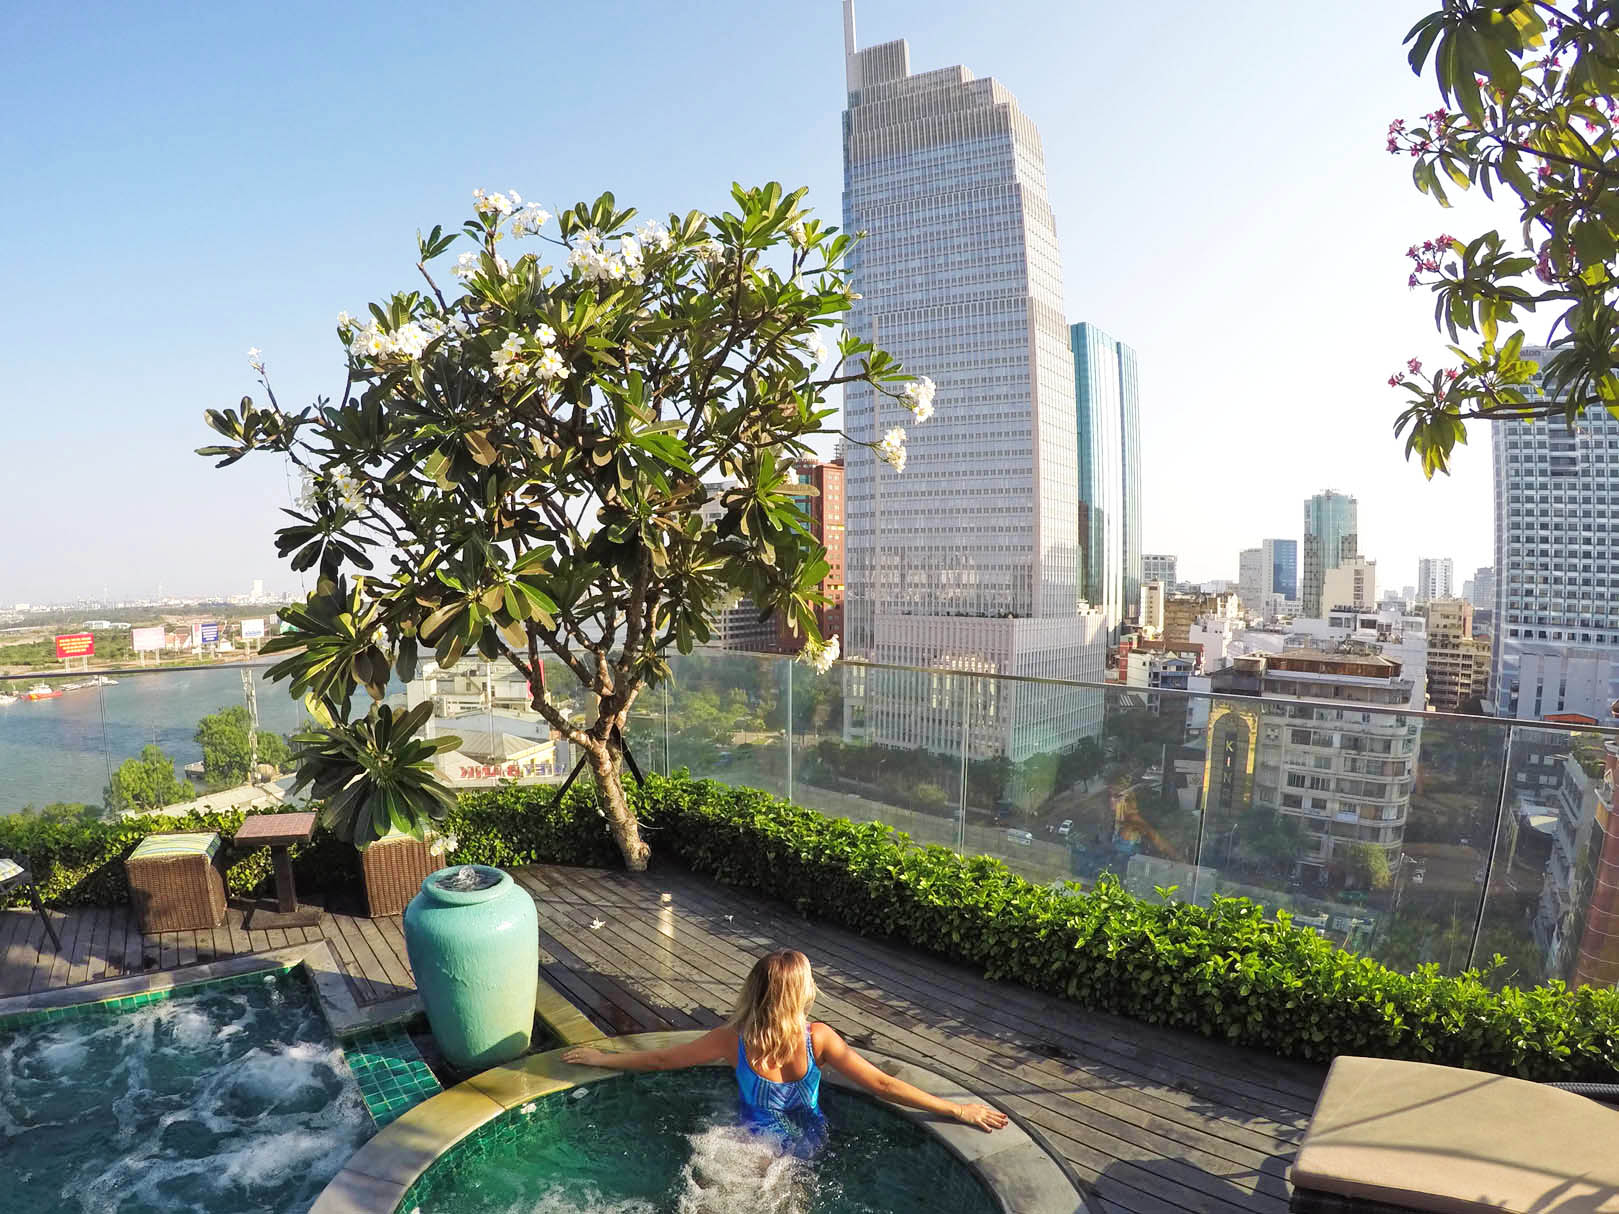 Piscina no rooftop do Silverland Jolie Hotel & Spa, no Distrito 1 de Ho Chi Minh City (Saigon)